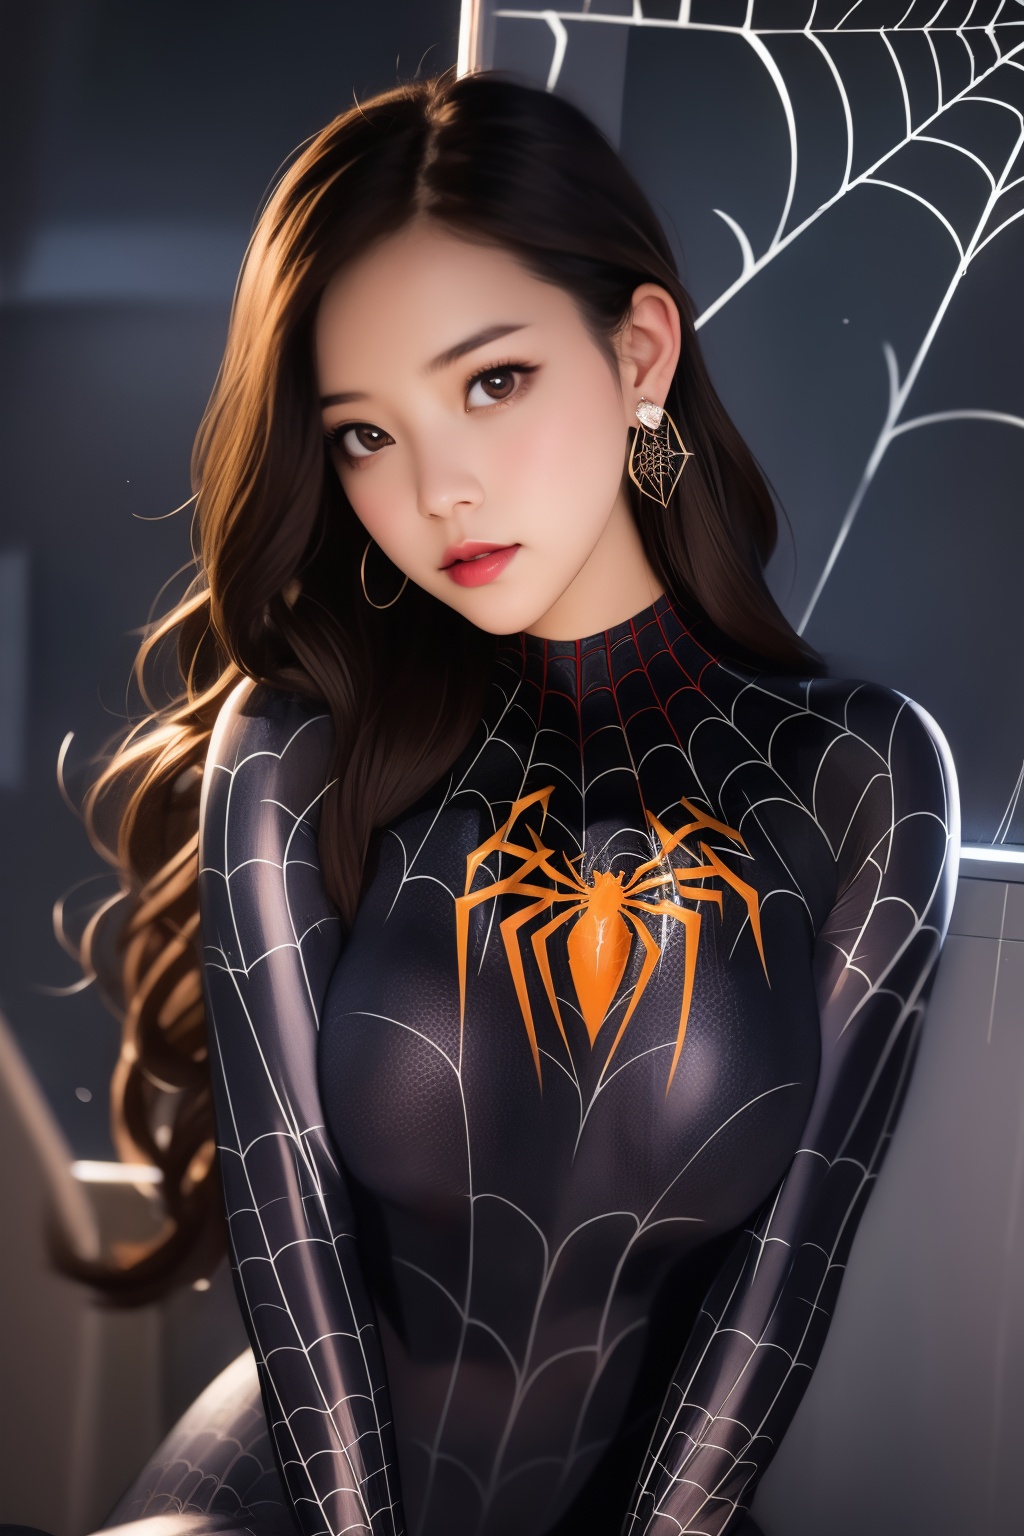 spiderman cosplay,1girl,long hair,looking at viewer,brown hair,brown eyes,earrings,bodysuit,spider web,head tilt,simple background,<lora:lbc_spiderman_ycc_240401_v1.0-000008:0.8>,